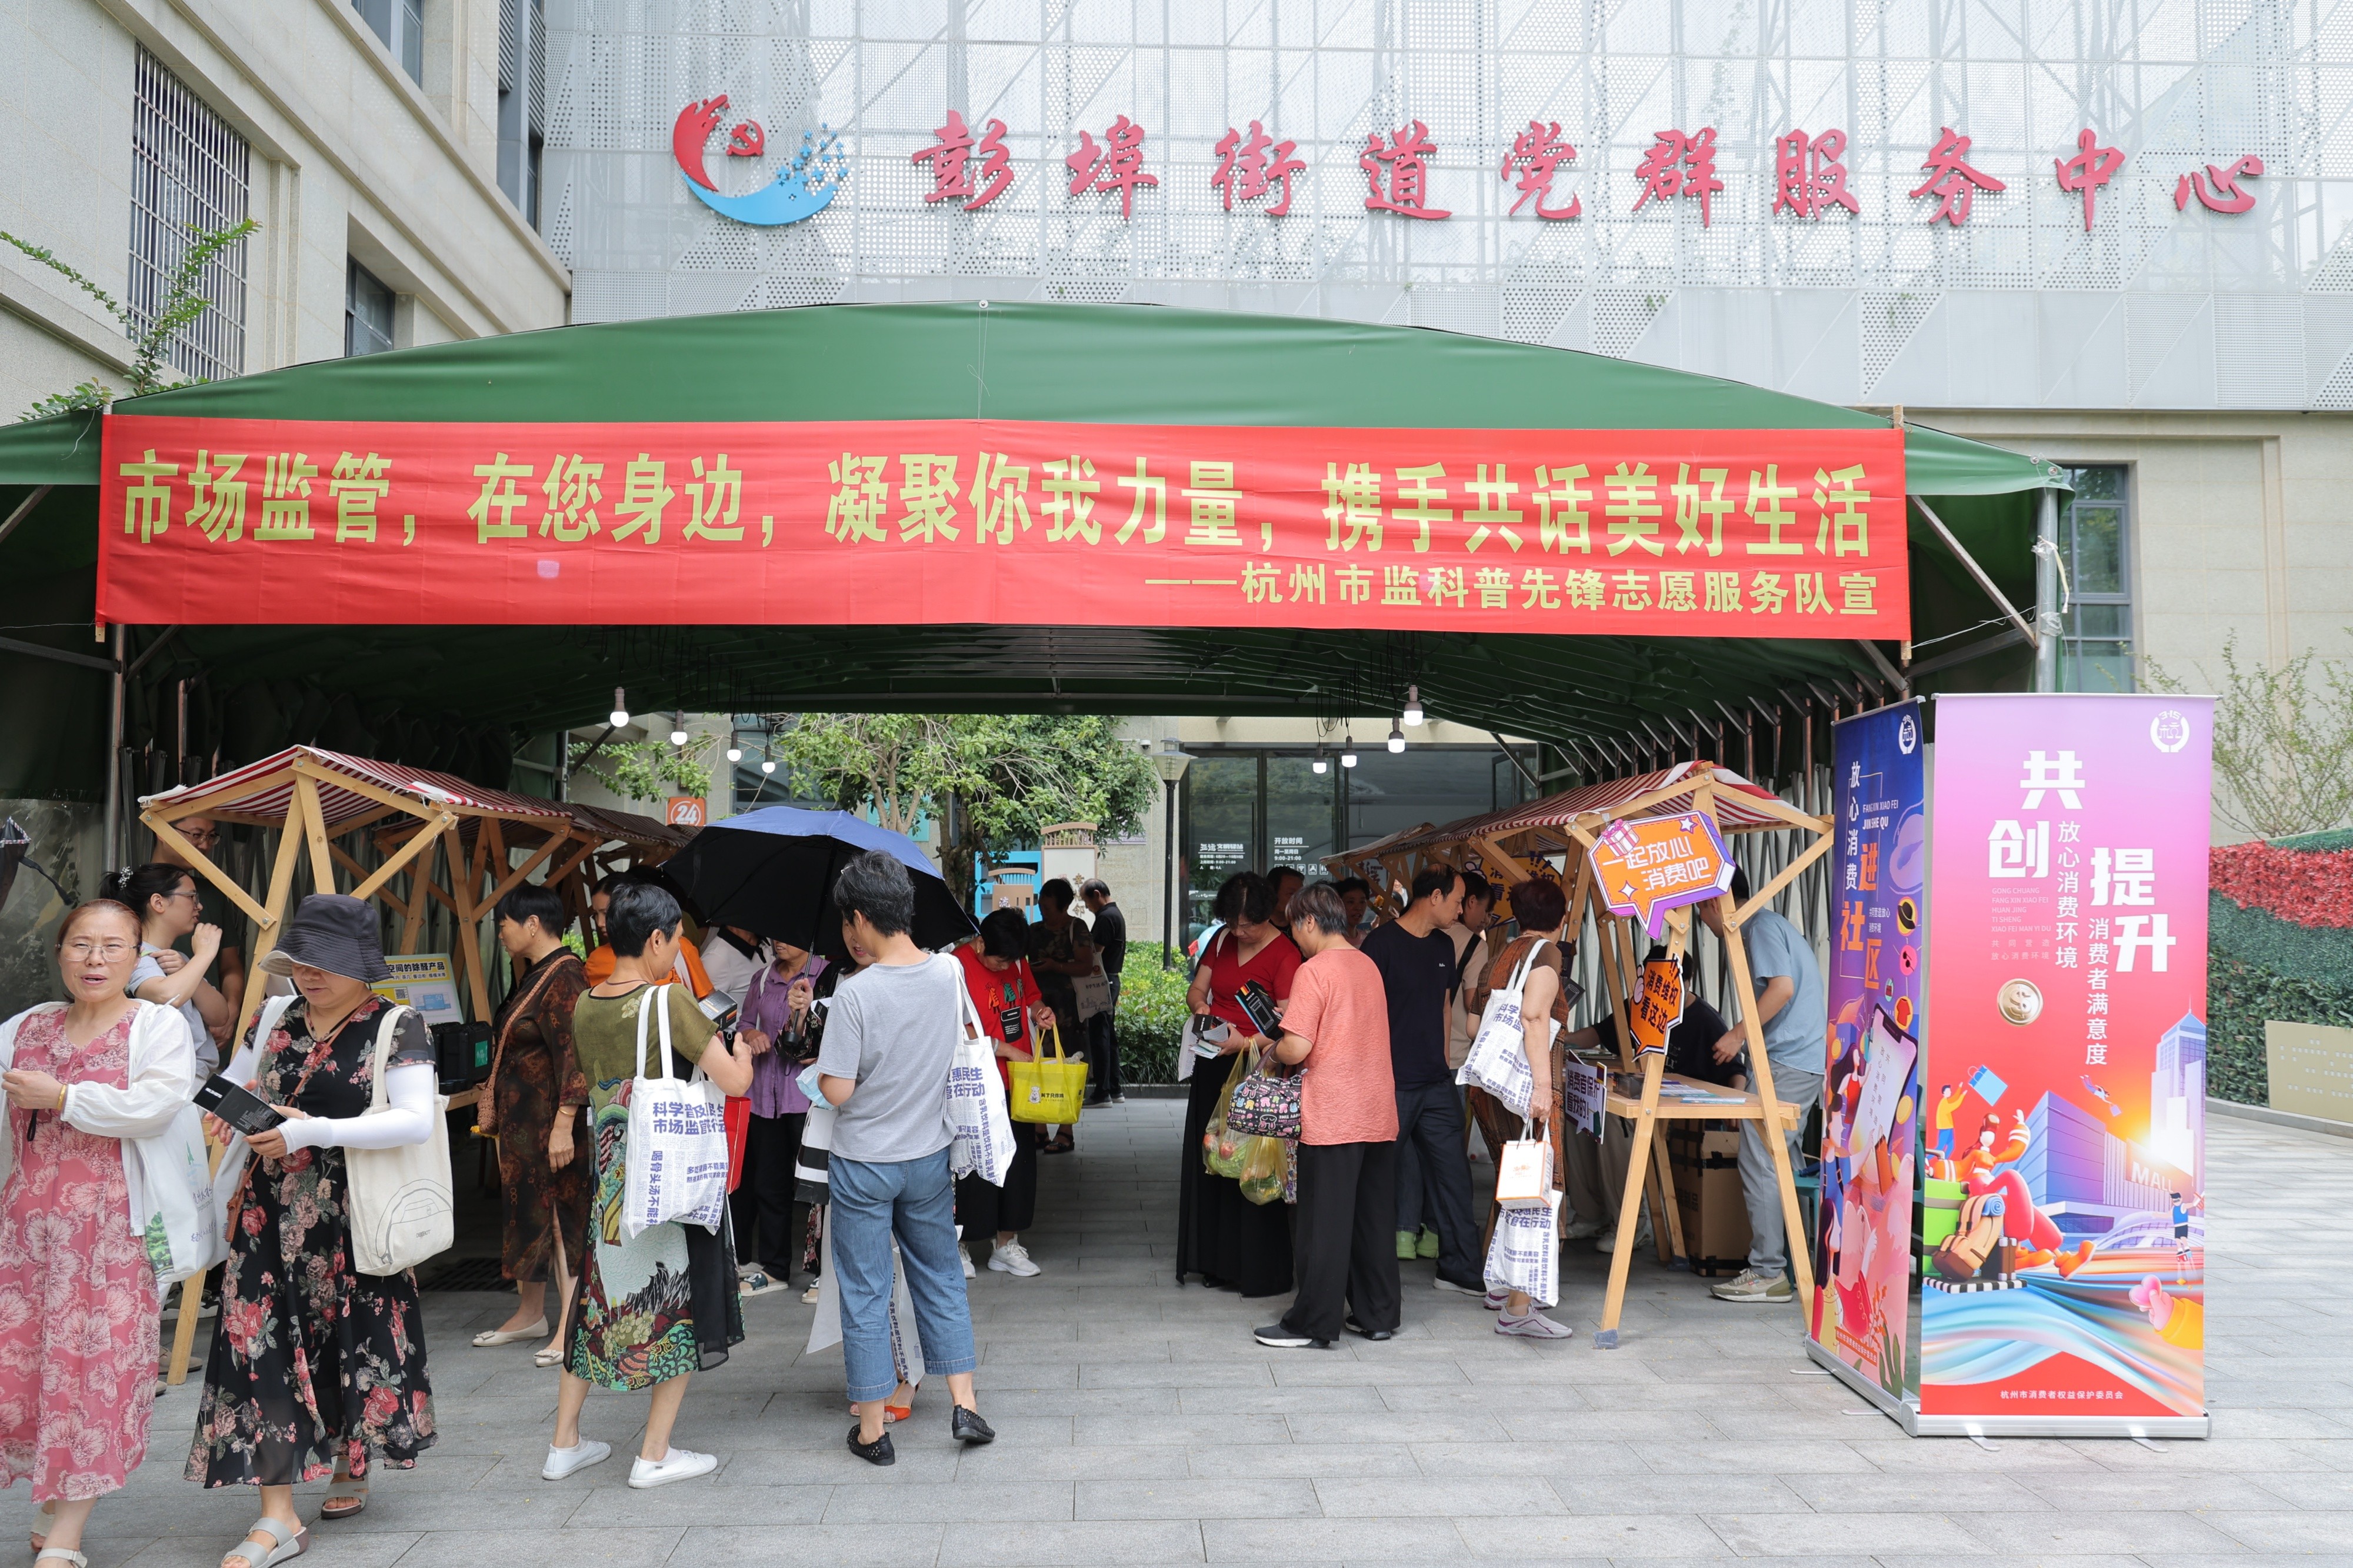 “市场监管科普集市”开张啦!杭州市场监管局深入社区开展科普宣传活动